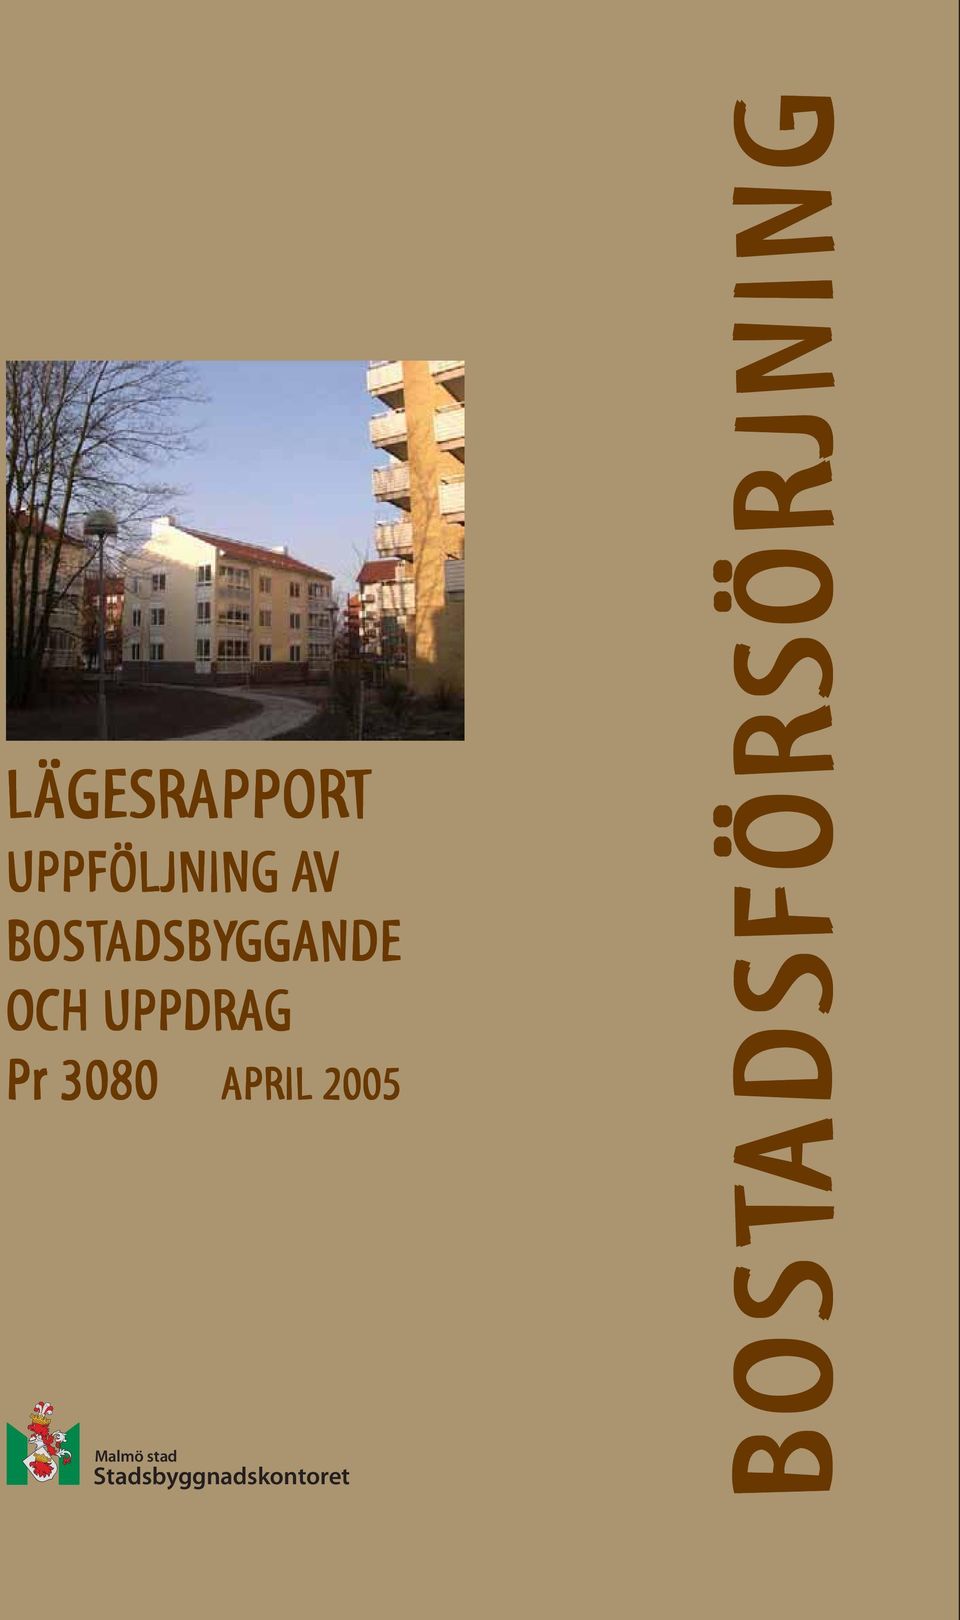 Pr 3080 APRIL 2005 Malmö stad